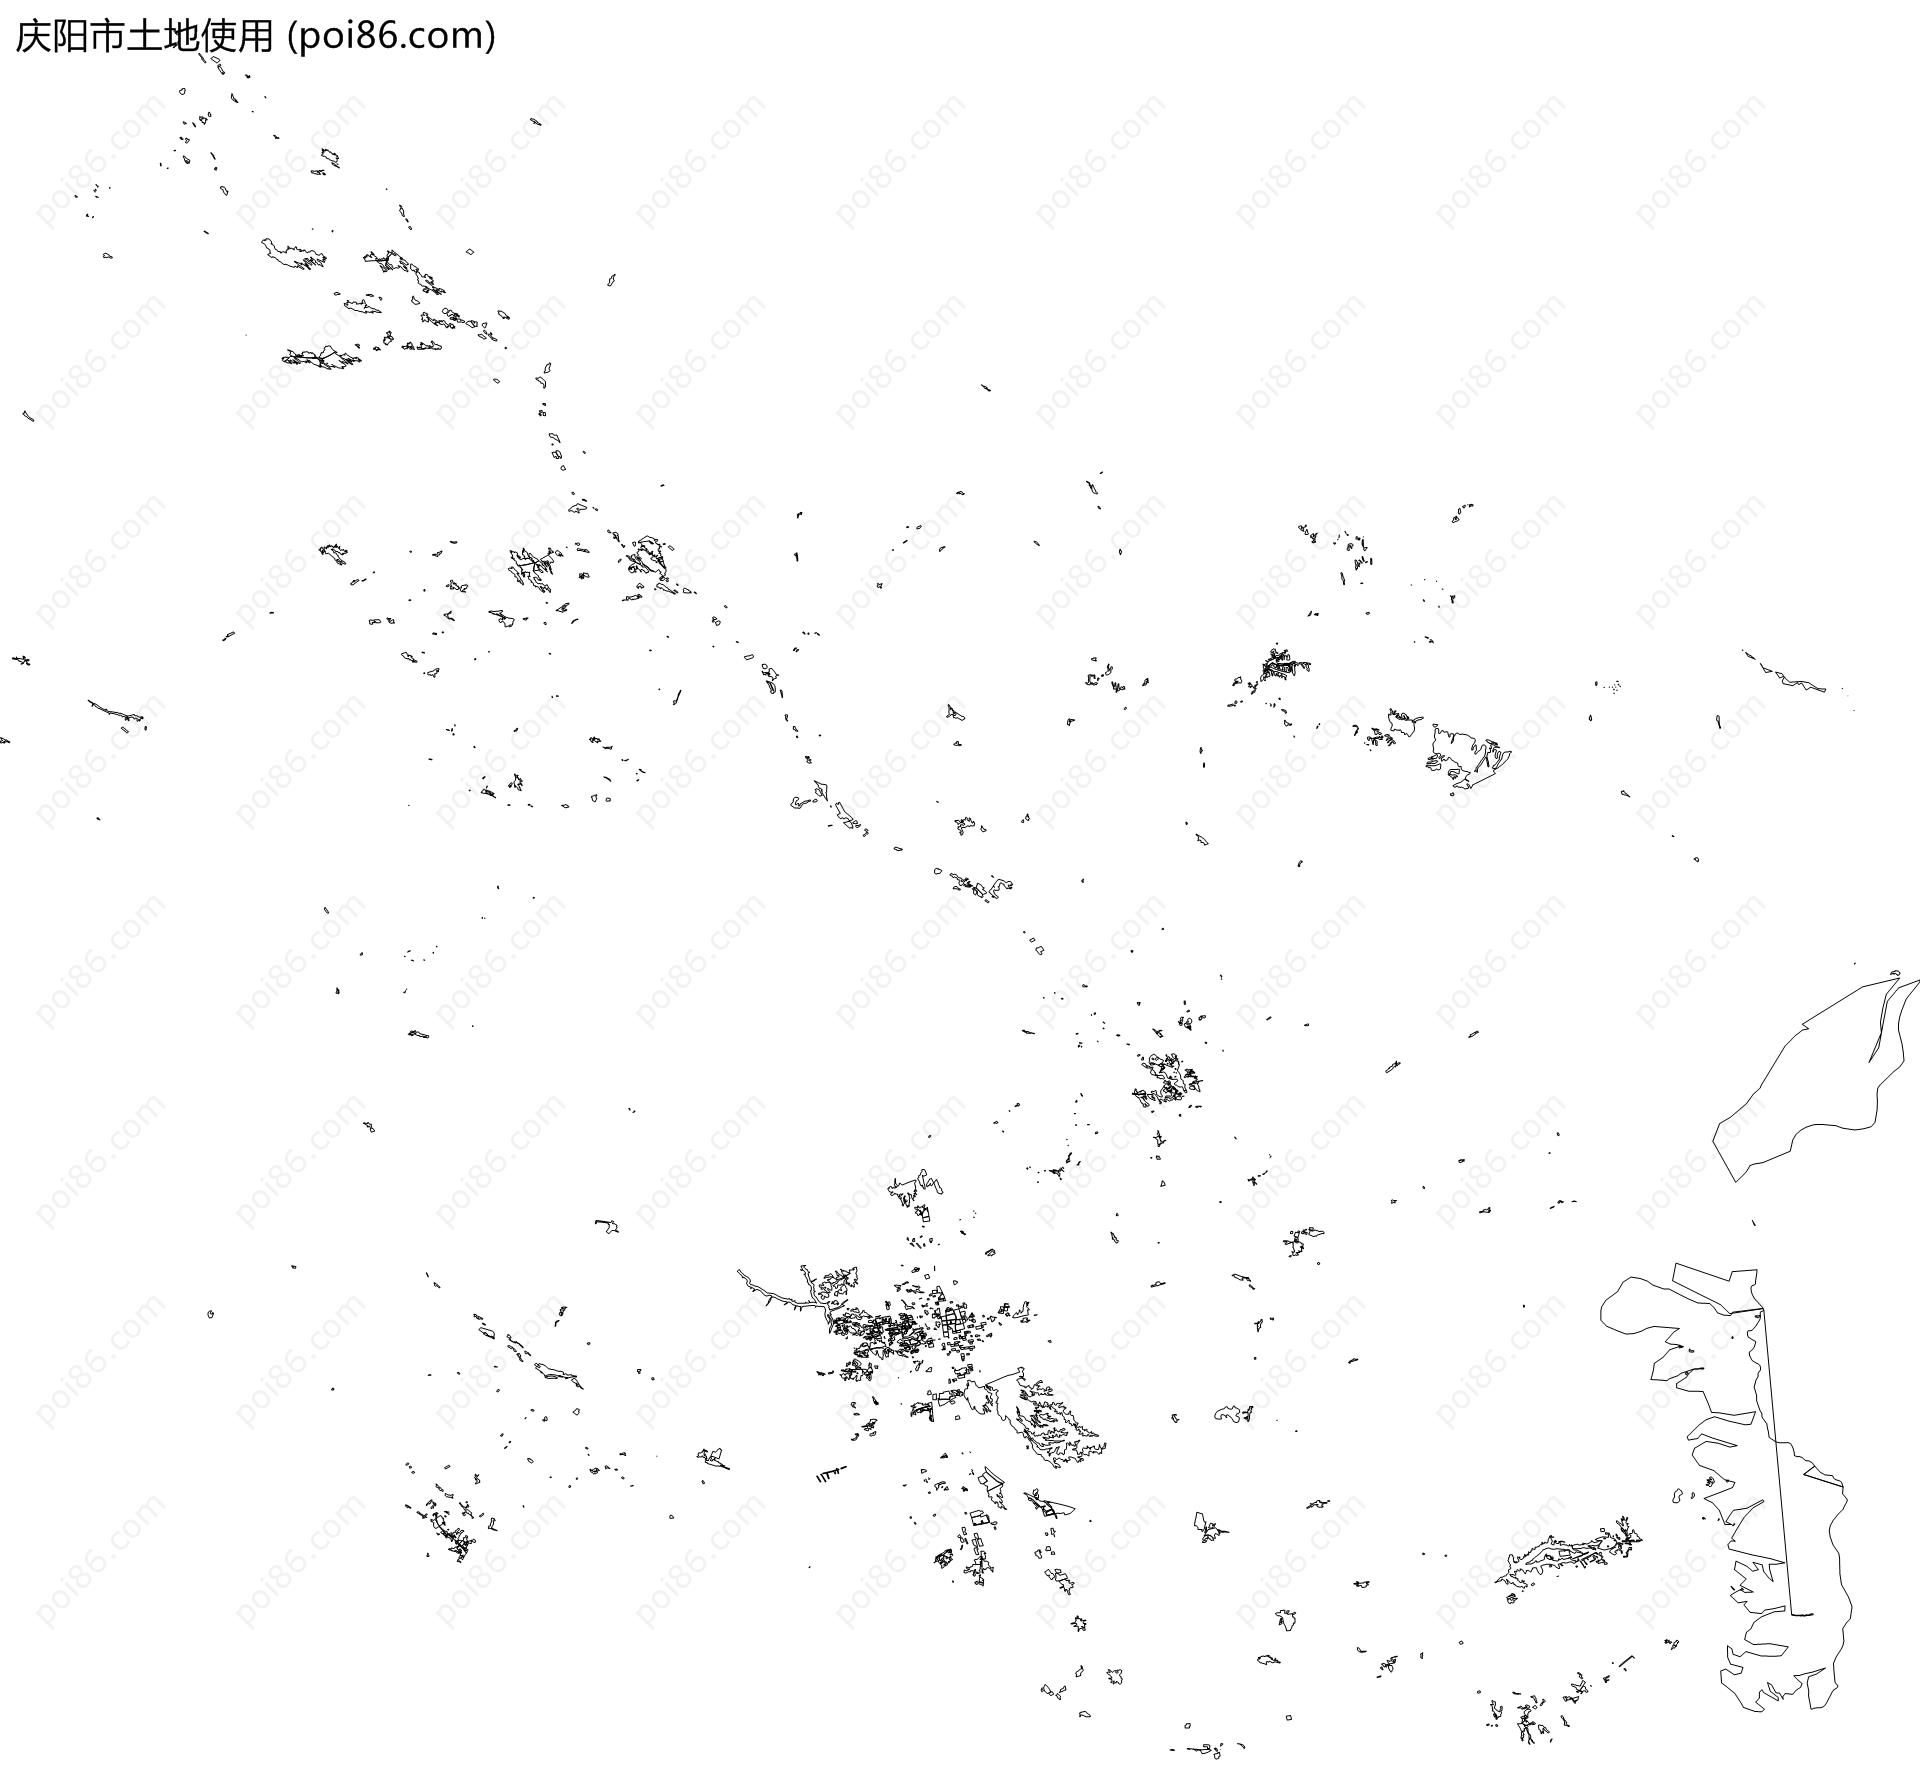 庆阳市土地使用地图